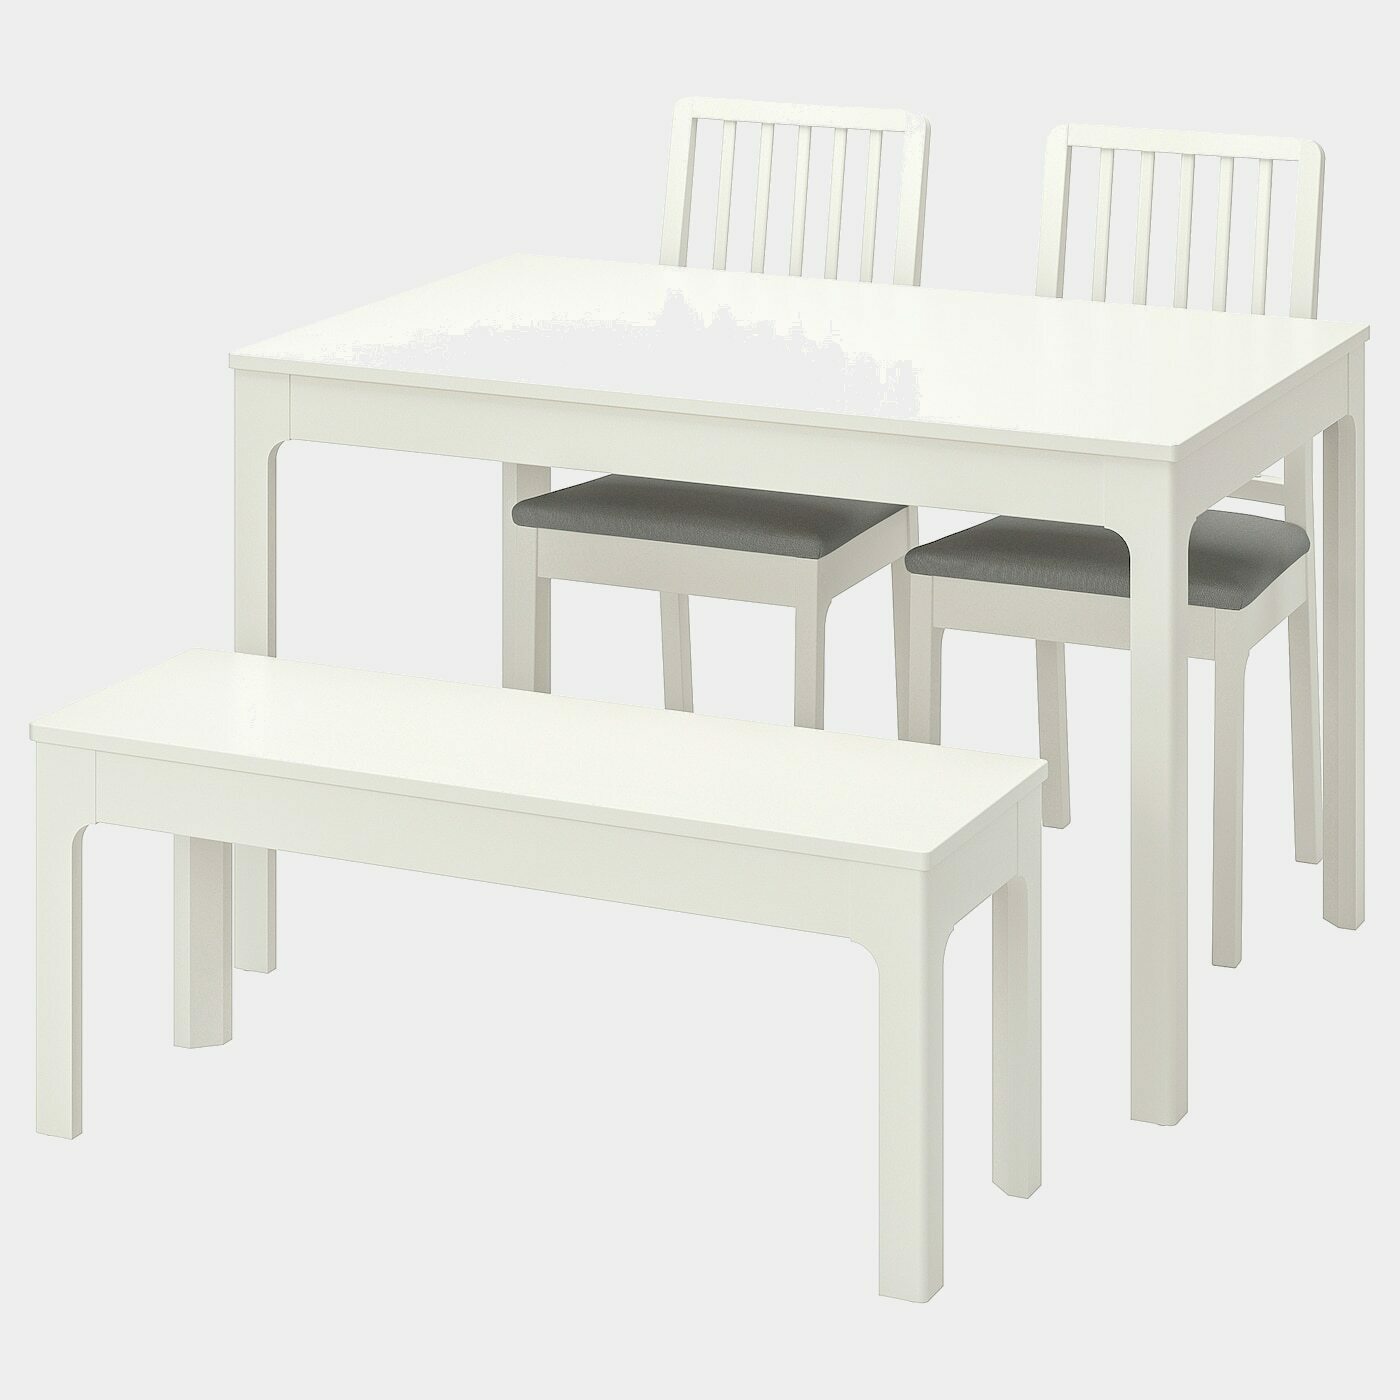 EKEDALEN / EKEDALEN Tisch, 2 Stühle + Bank  - Essplatzgruppe - Möbel Ideen für dein Zuhause von Home Trends. Möbel Trends von Social Media Influencer für dein Skandi Zuhause.